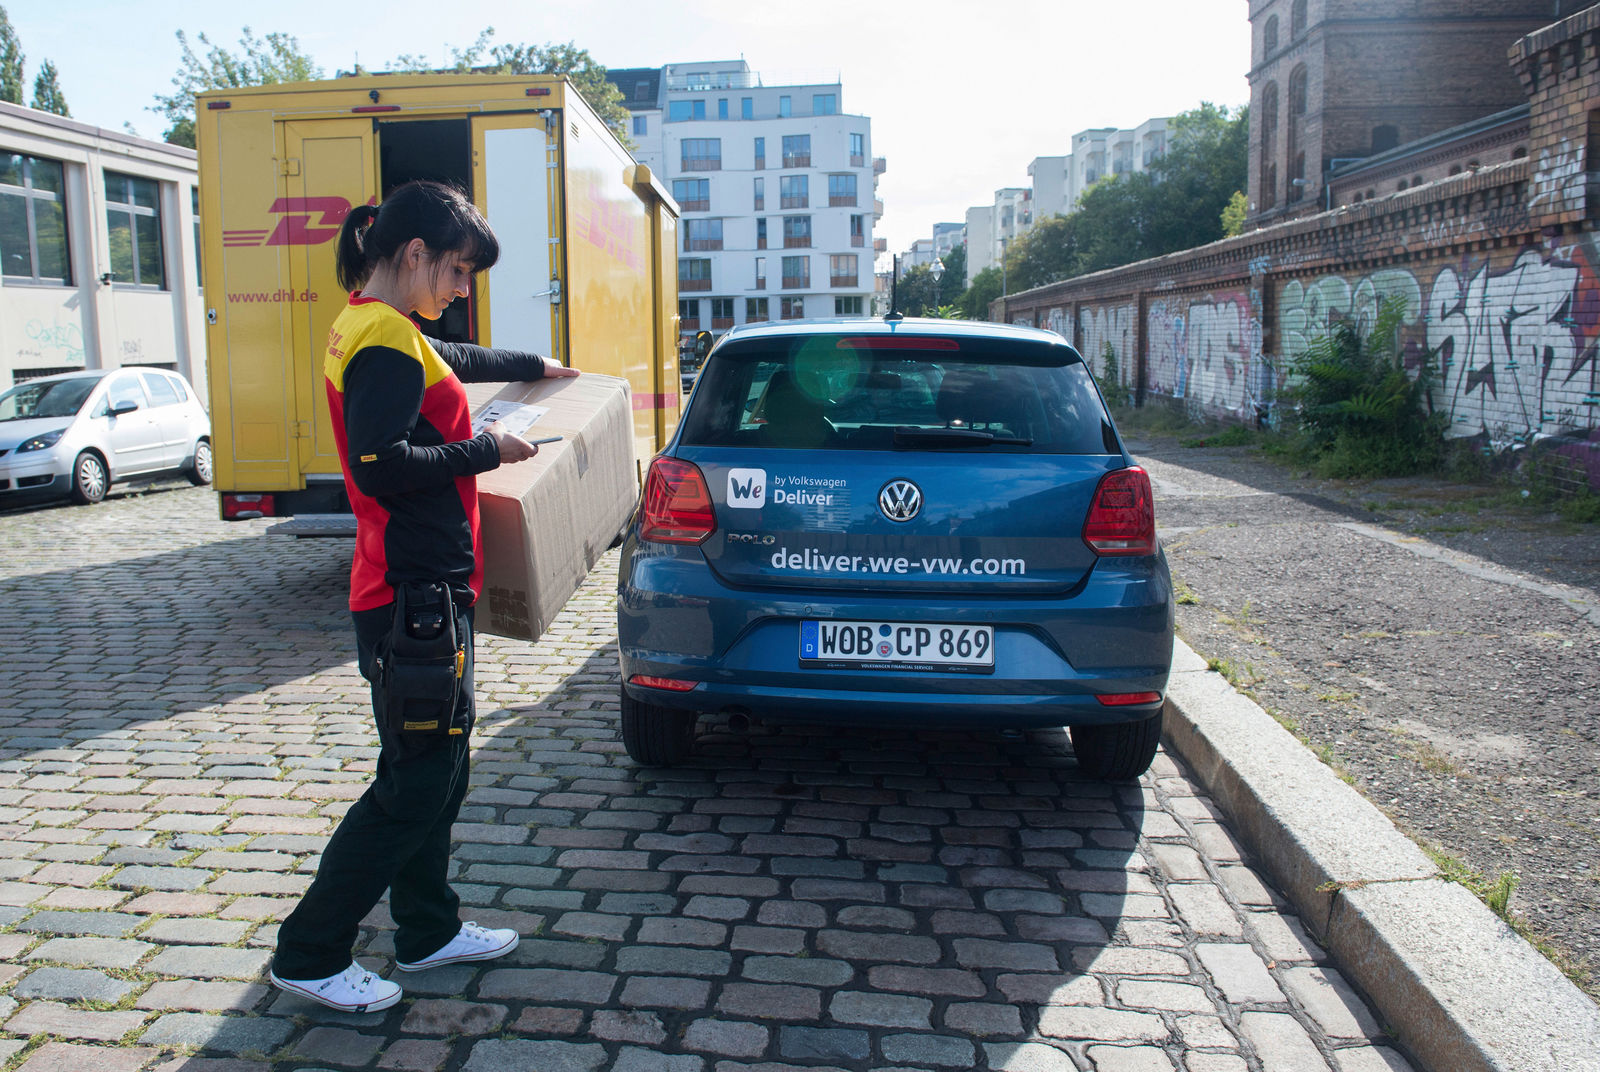 Paketzustellung leicht gemacht: Volkswagen und DHL starten Pilotprojekt für Lieferung in Kofferraum